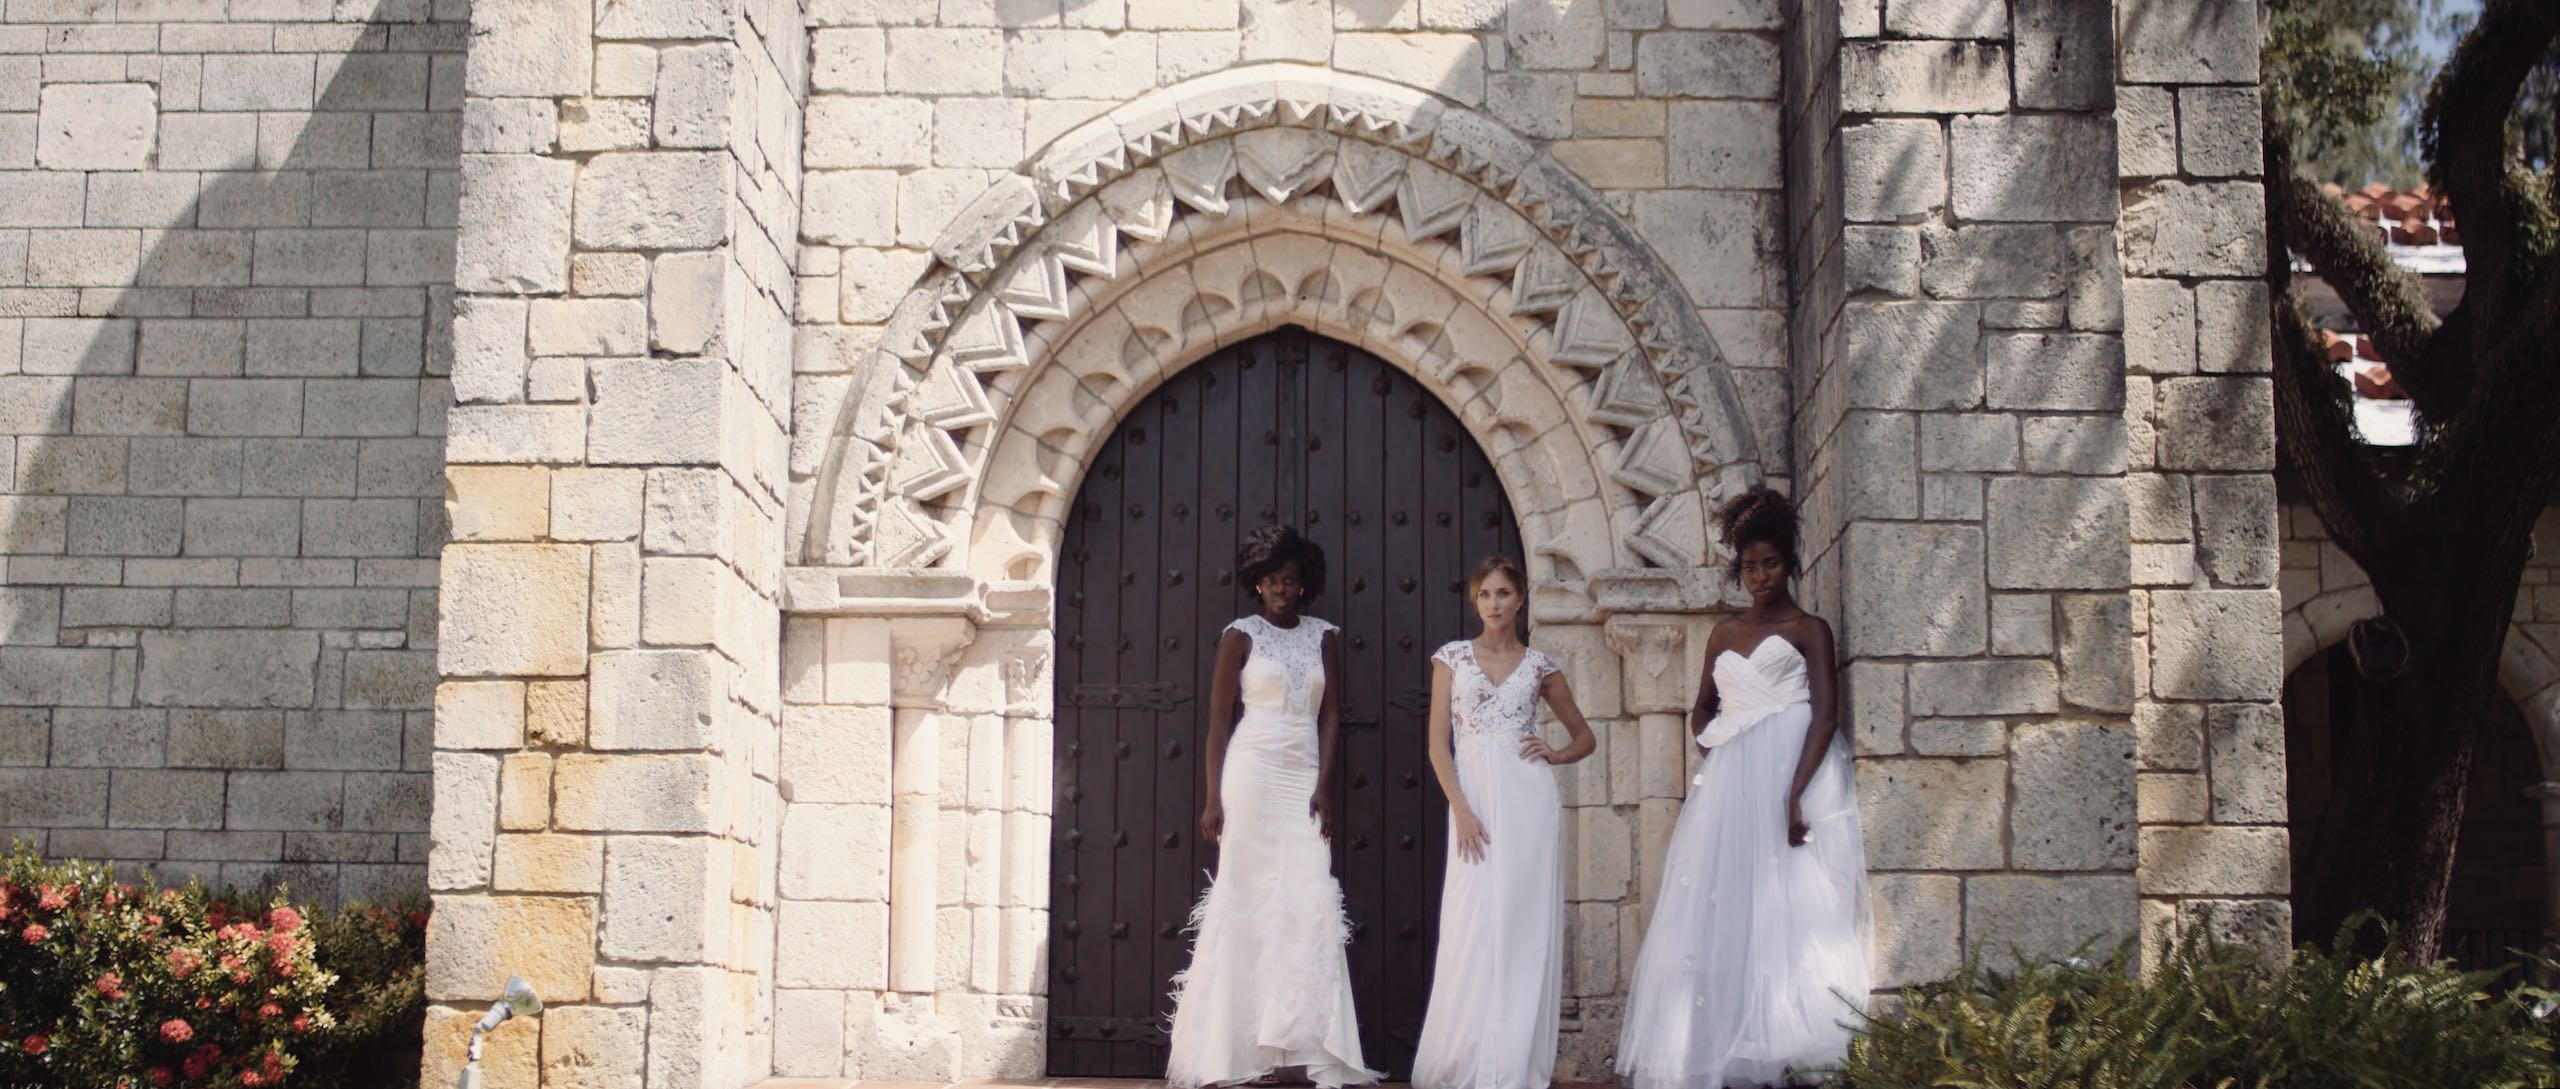 Dailies 0059 Delilah Castro Wedding Dresses Three women in wedding dresses posing in front of church door